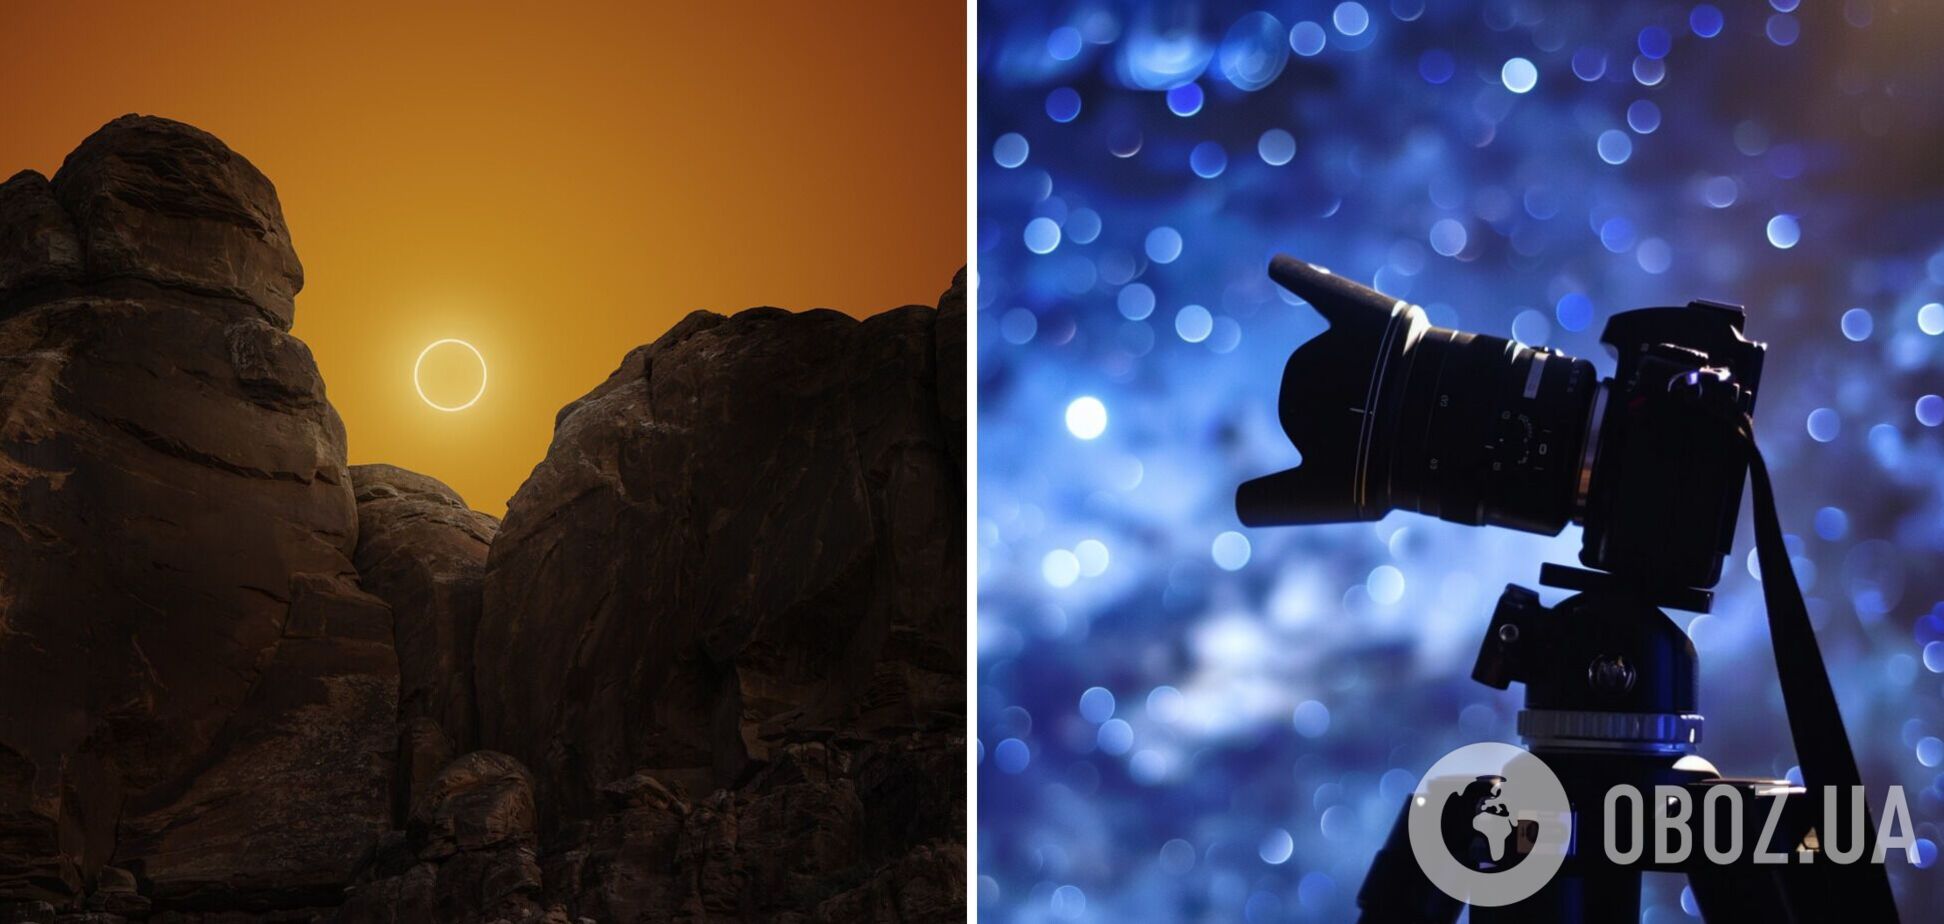 Астрофотограф показав фото сонячного затемнення, яке створювали 5 місяців: це схоже на інший світ